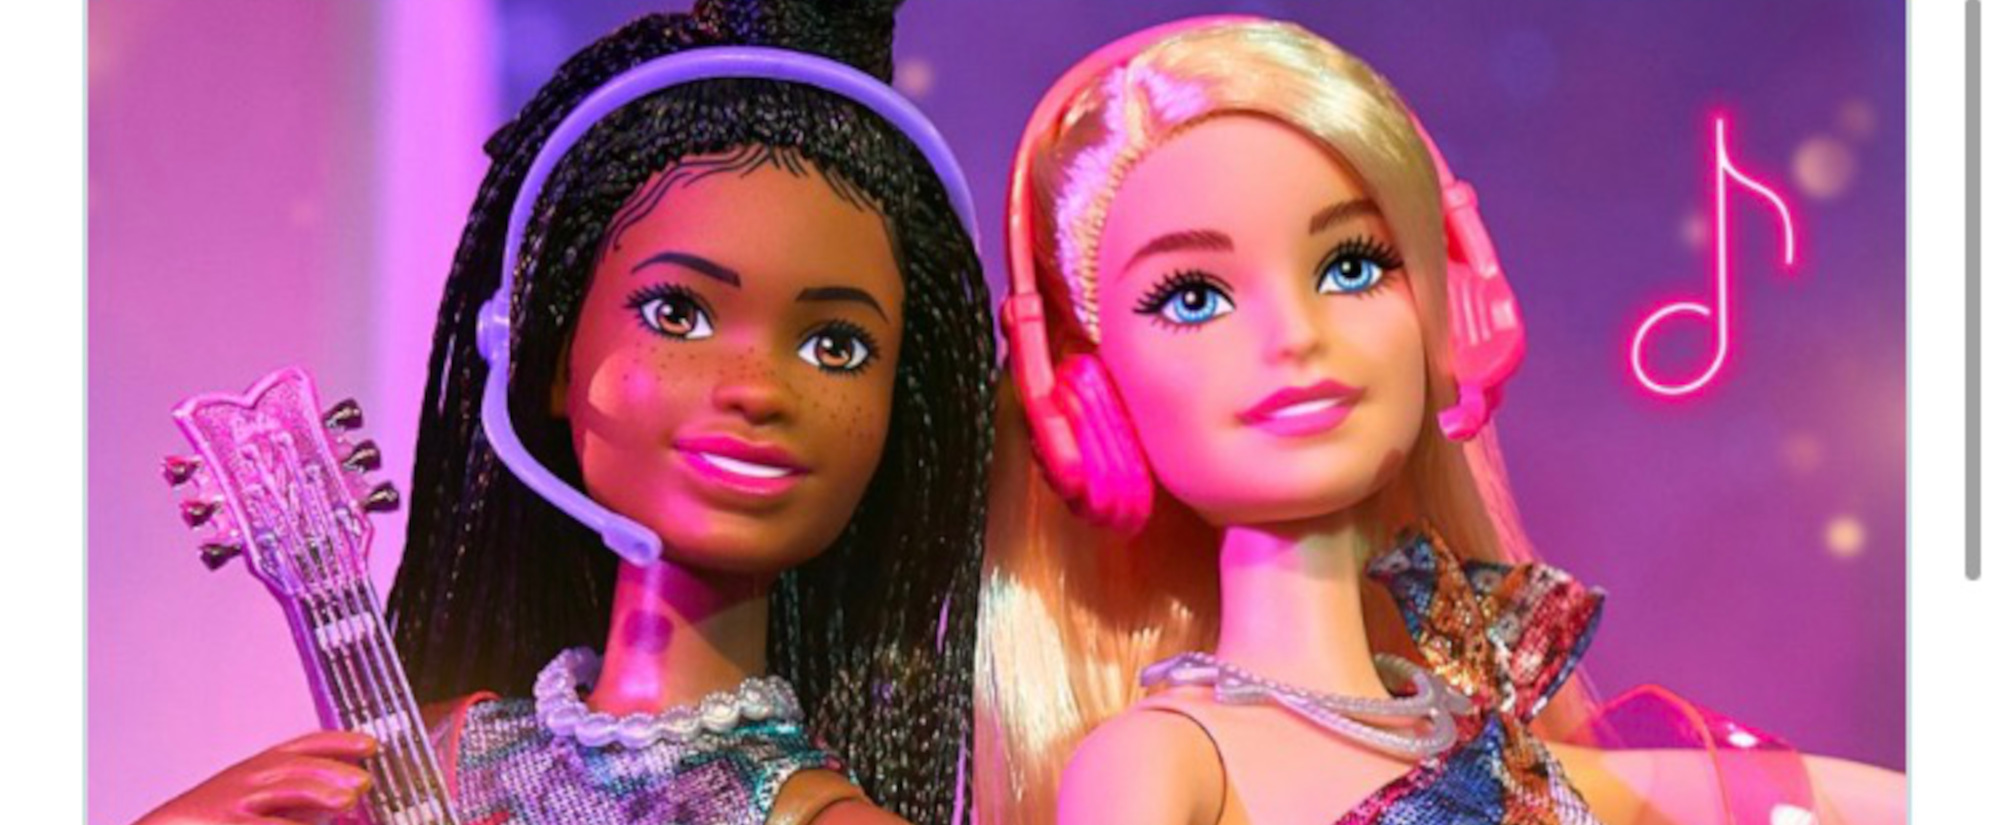 Mattel and Fender Partner for Barbie-Inspired Lessons